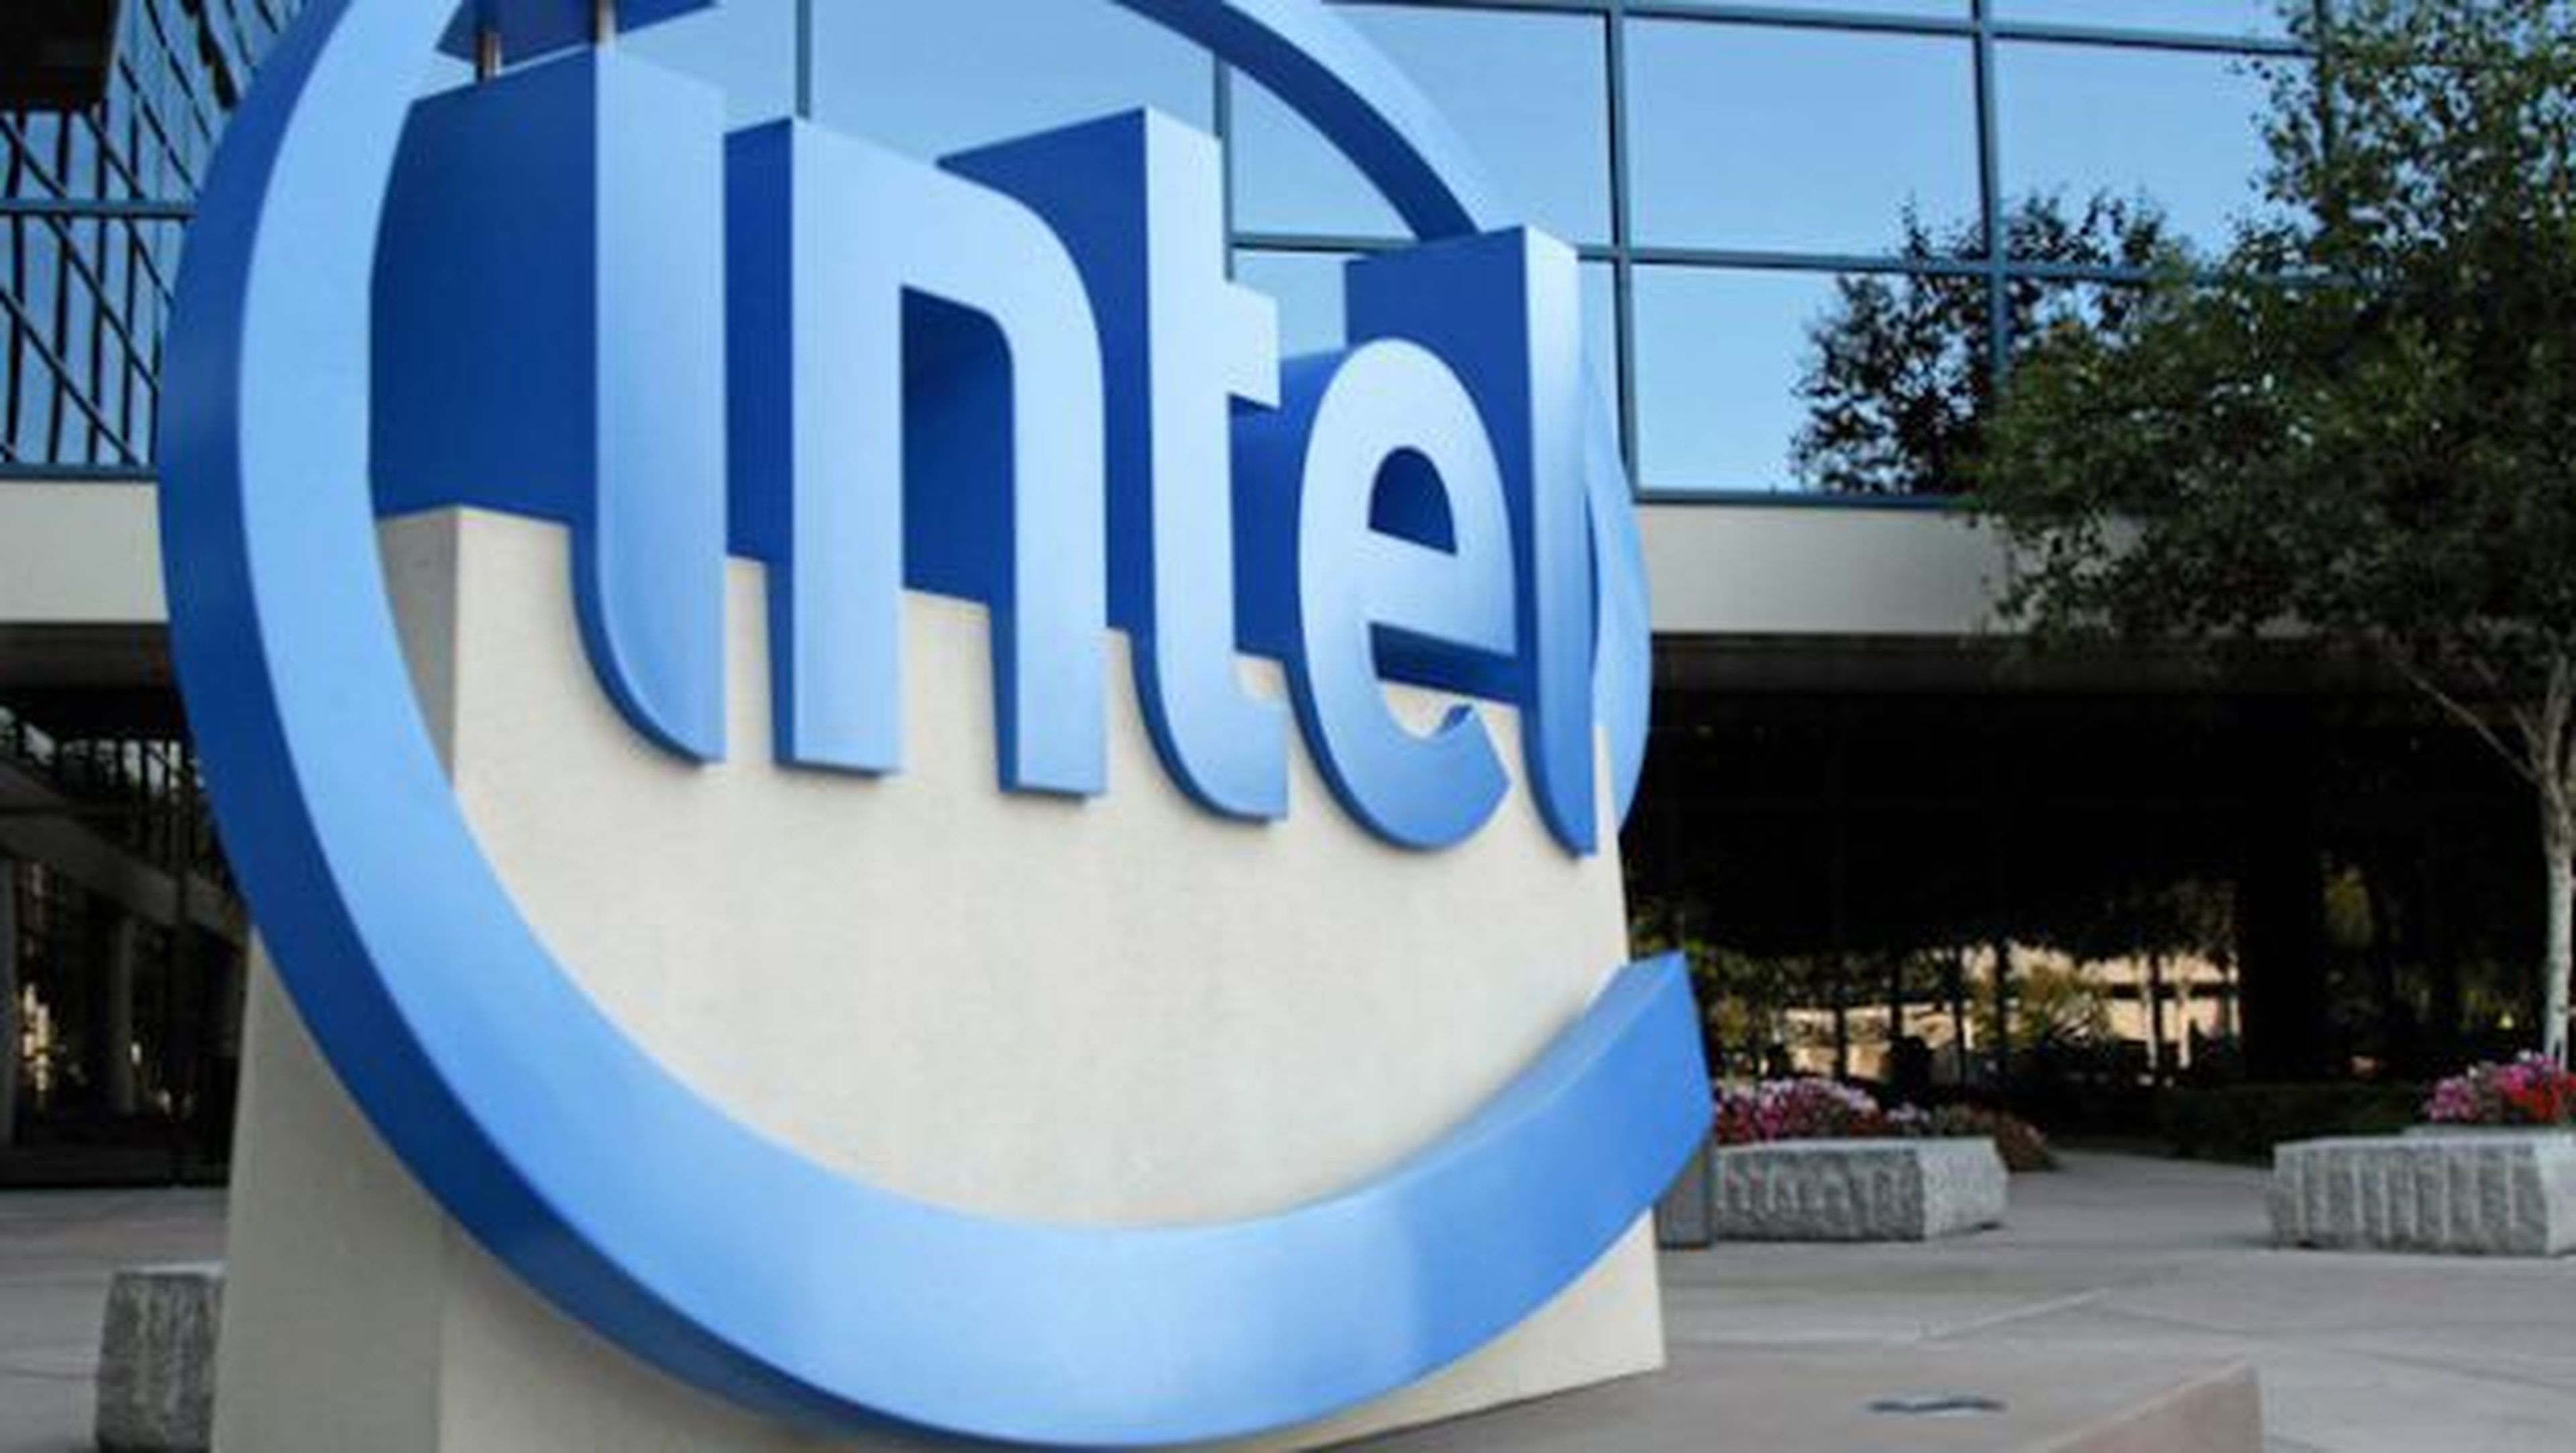 Intel habilitará carga inalámbrica en hoteles y aeropuertos